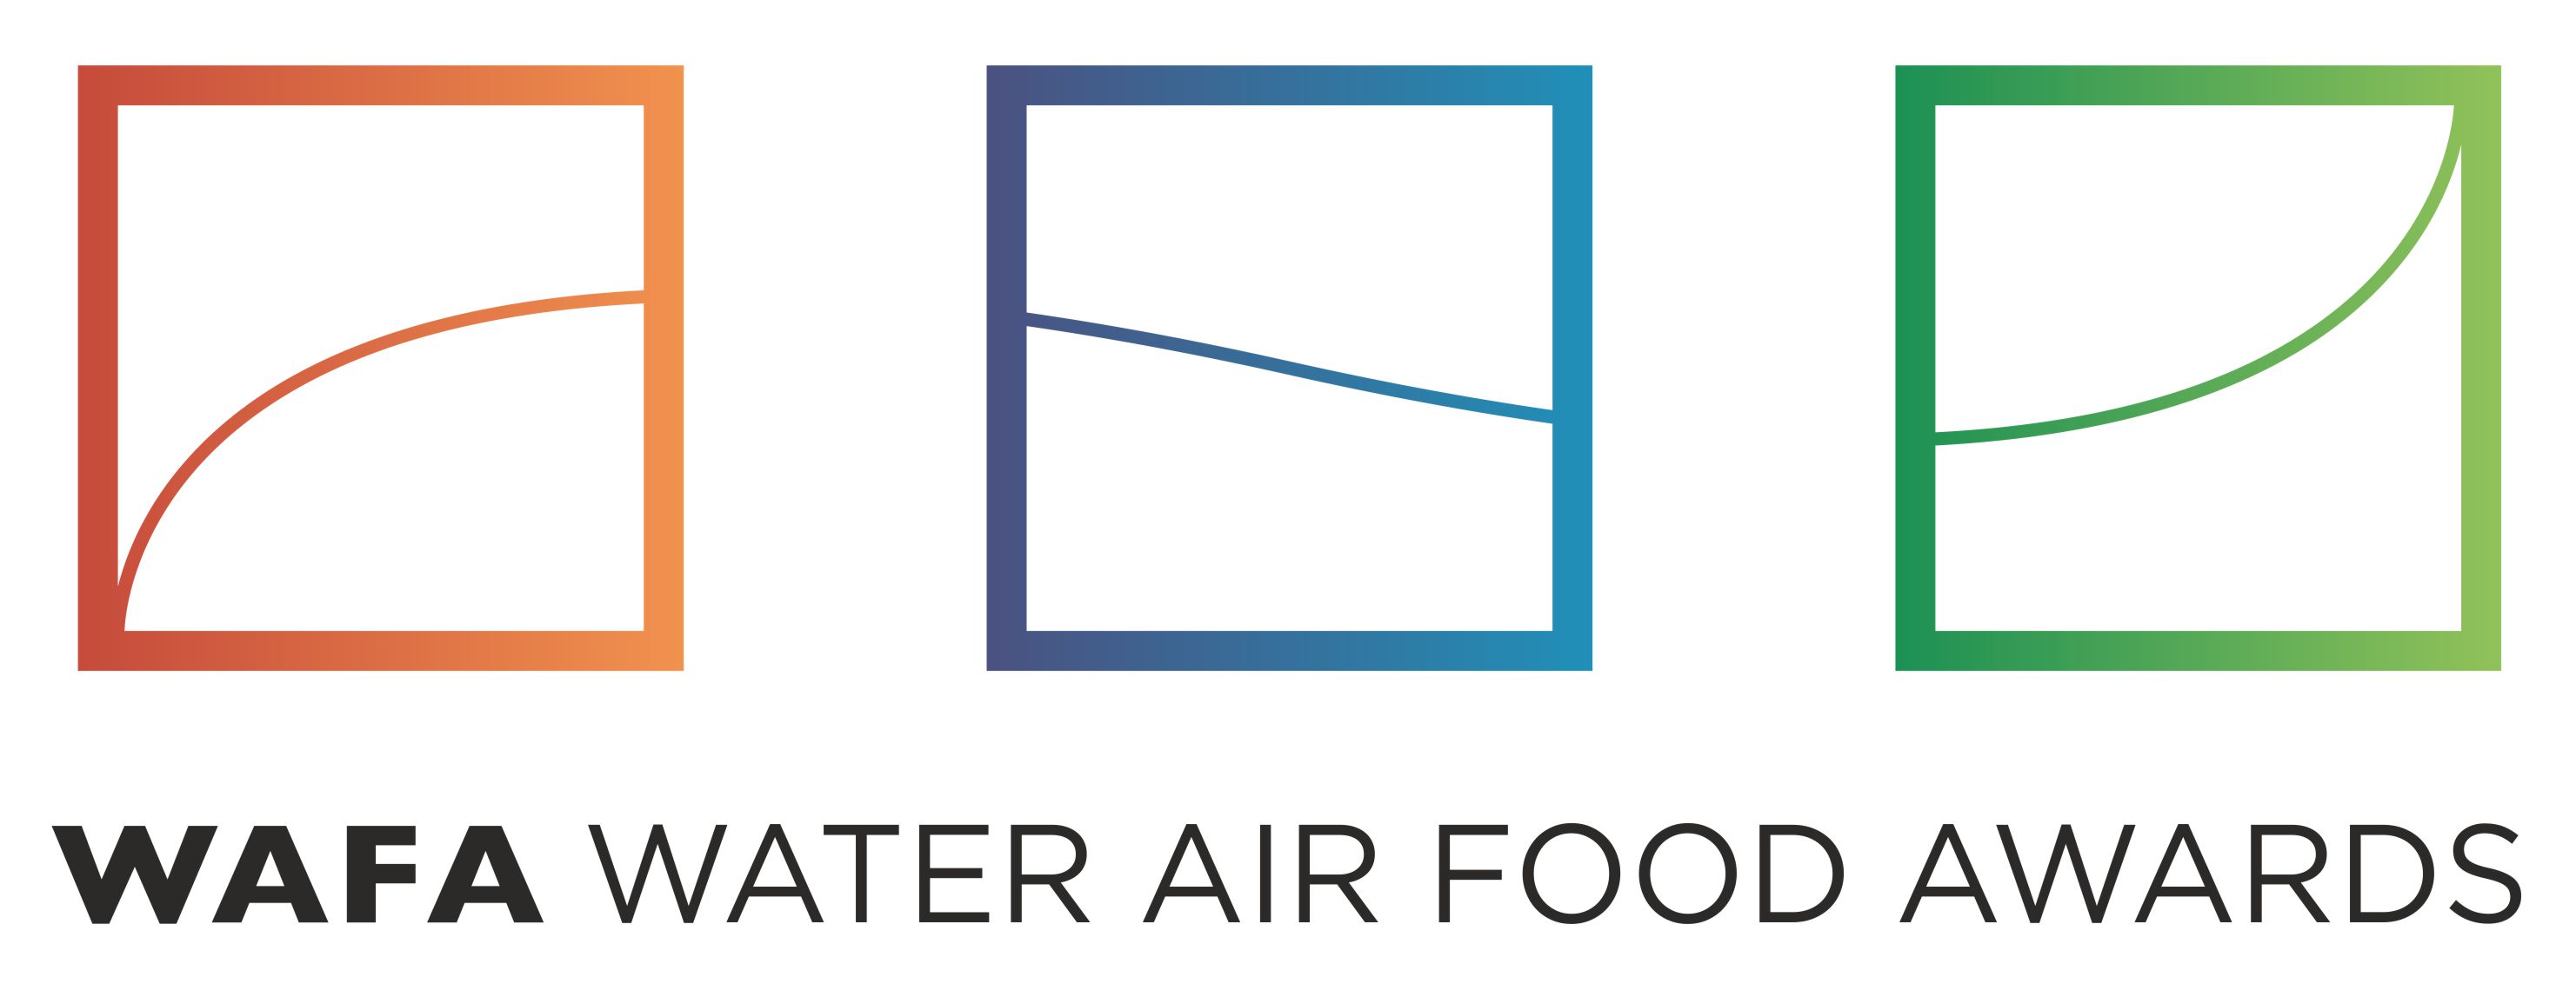 Water Air Food Awards (WAFA)